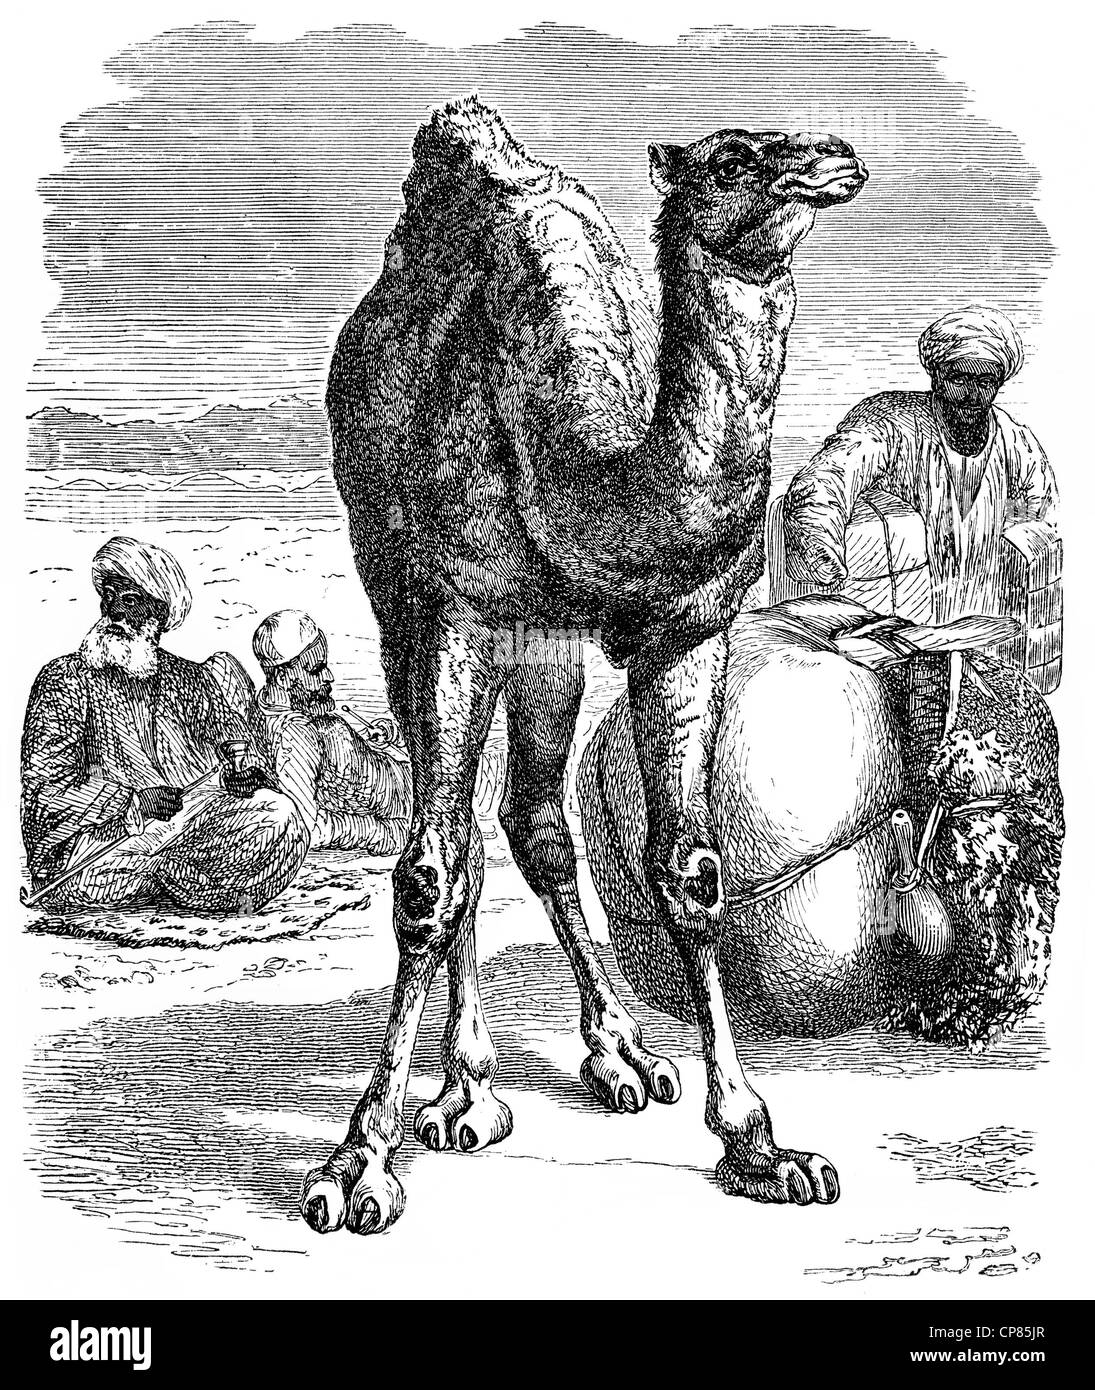 Ilustración histórica de un dromedario, Arabian camello (Camelus dromedarius), del siglo xix, Historische, zeichnerische Darstellung, Foto de stock